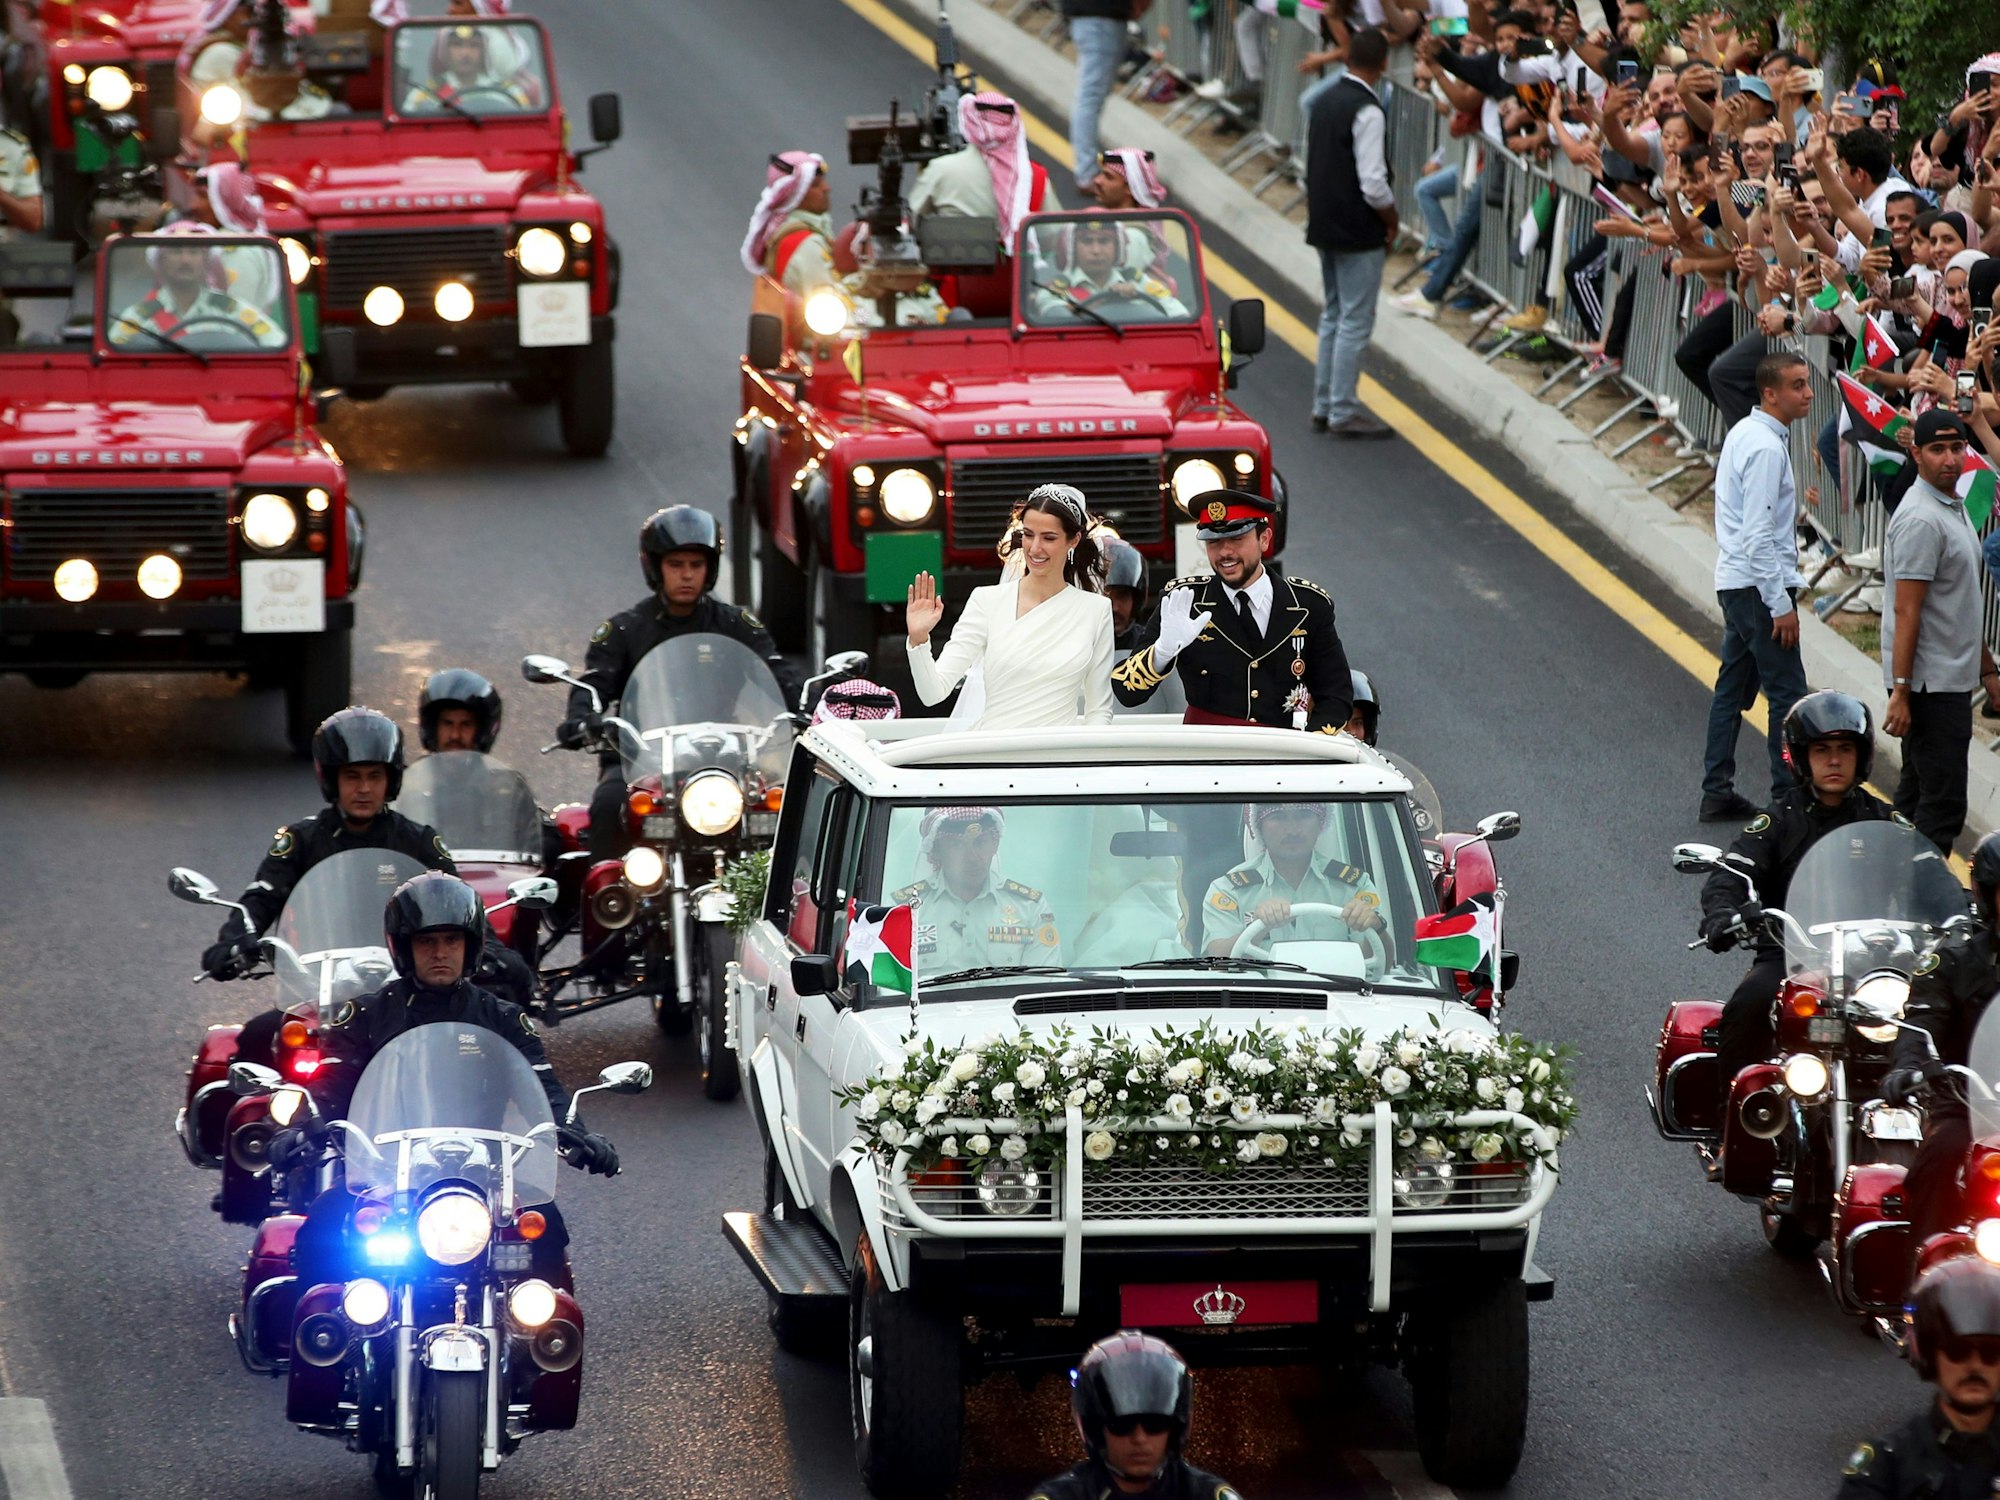 Rajwa Al Saifund der jordanische Kronprinz Hussein bin Abdullah II fahren anlässlich ihrer Hochzeit in einem offenen Wagen durch Amman.